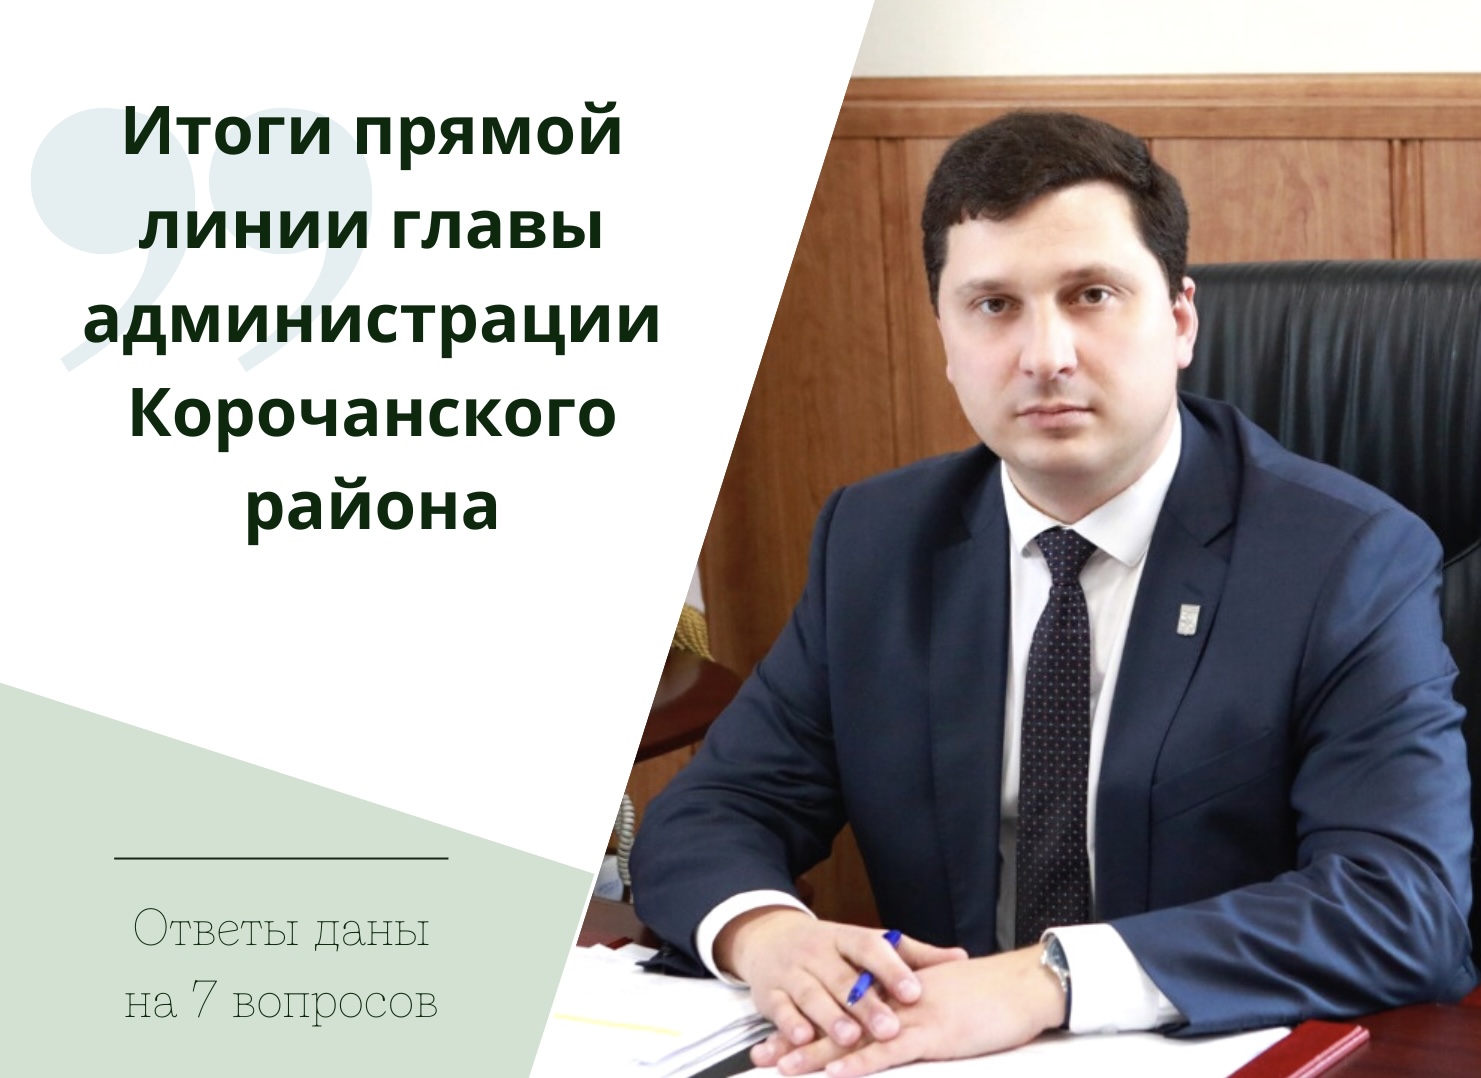 Глава администрации района Николай Нестеров провёл традиционный прямой эфир в социальных сетях